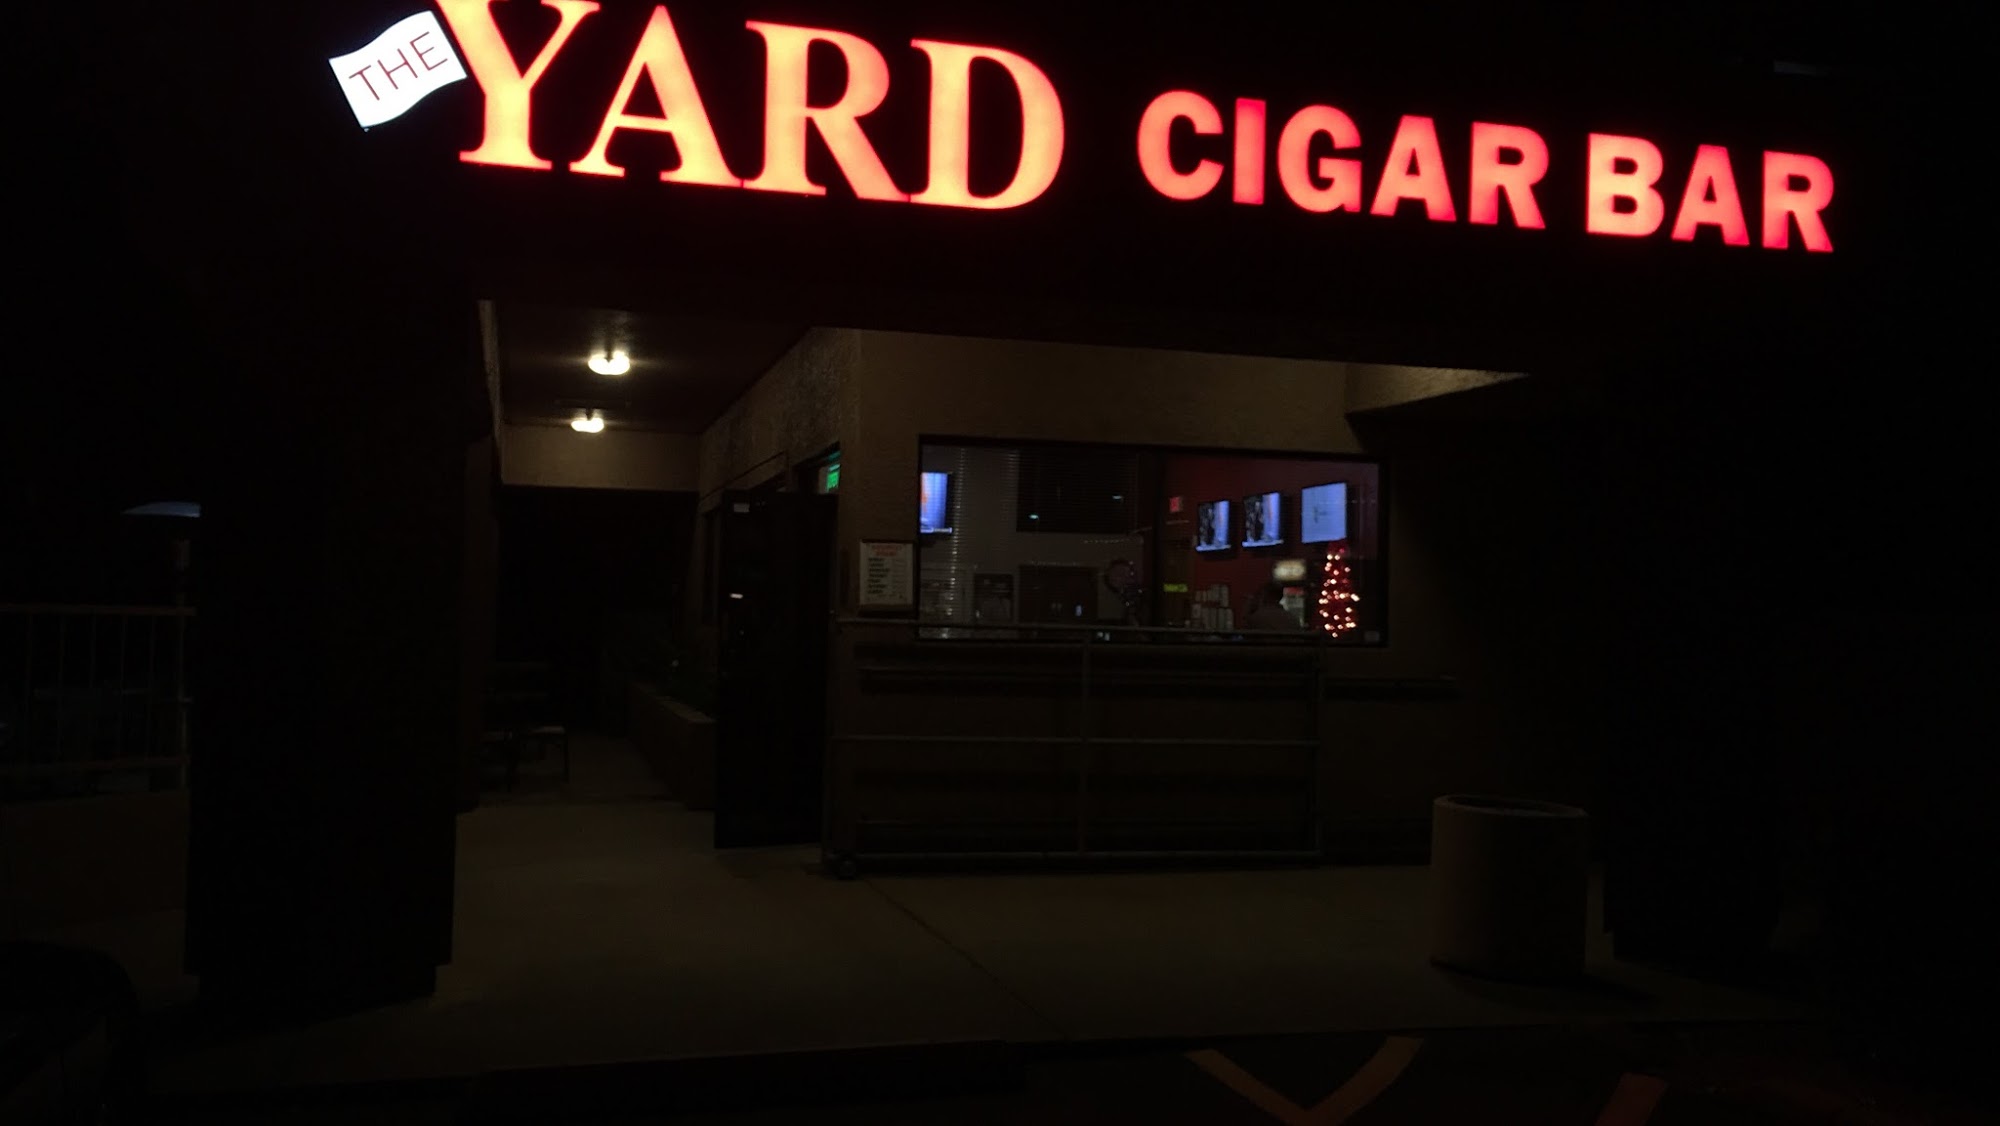 The Yard Cigar Bar